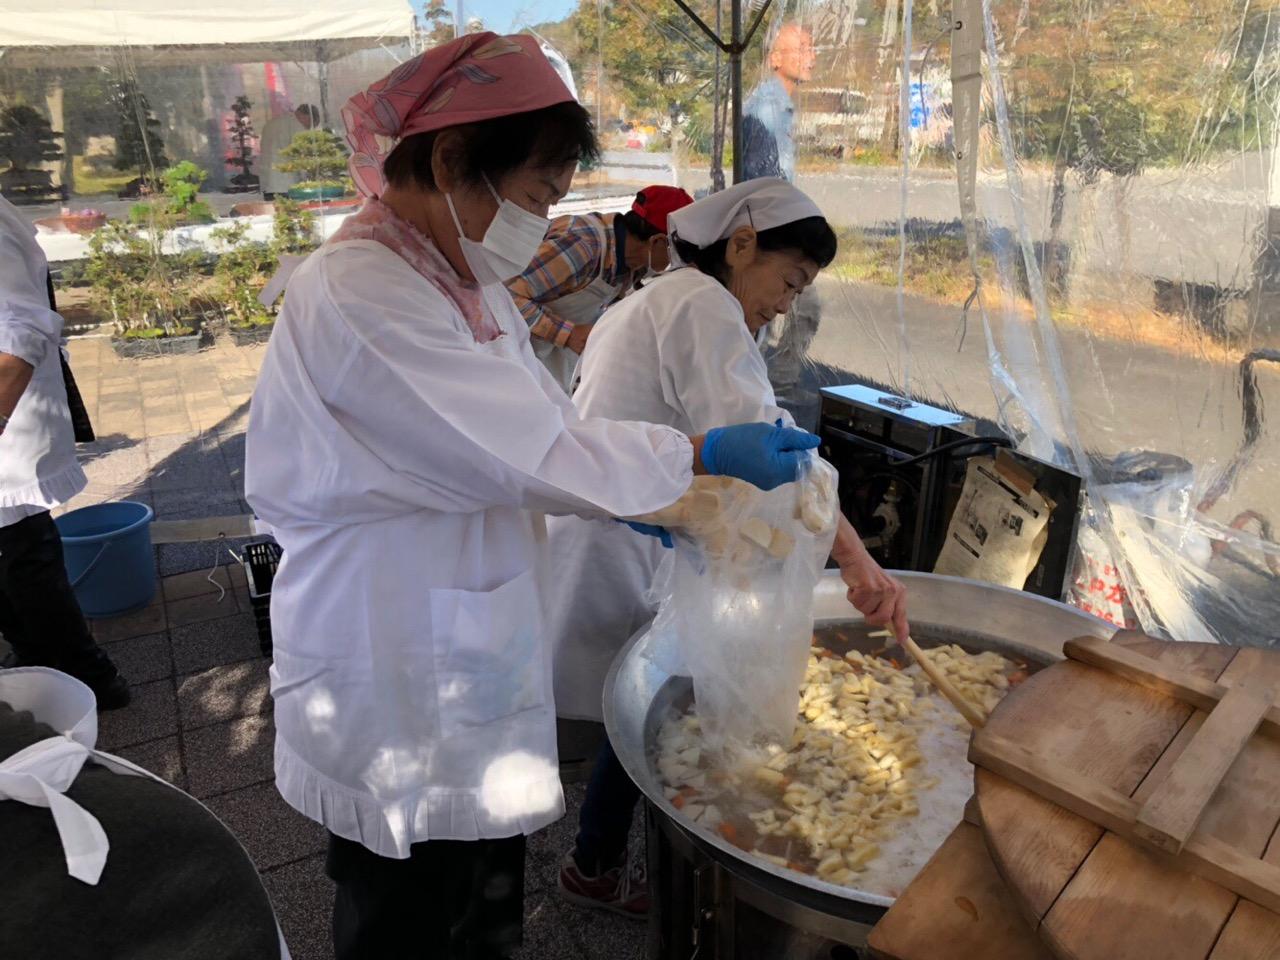 奉仕団の女性の方々が三角巾と割烹着を身に着けて、屋外のテントの中で、大鍋に汁物の材料を入れて煮込んでいる様子の写真